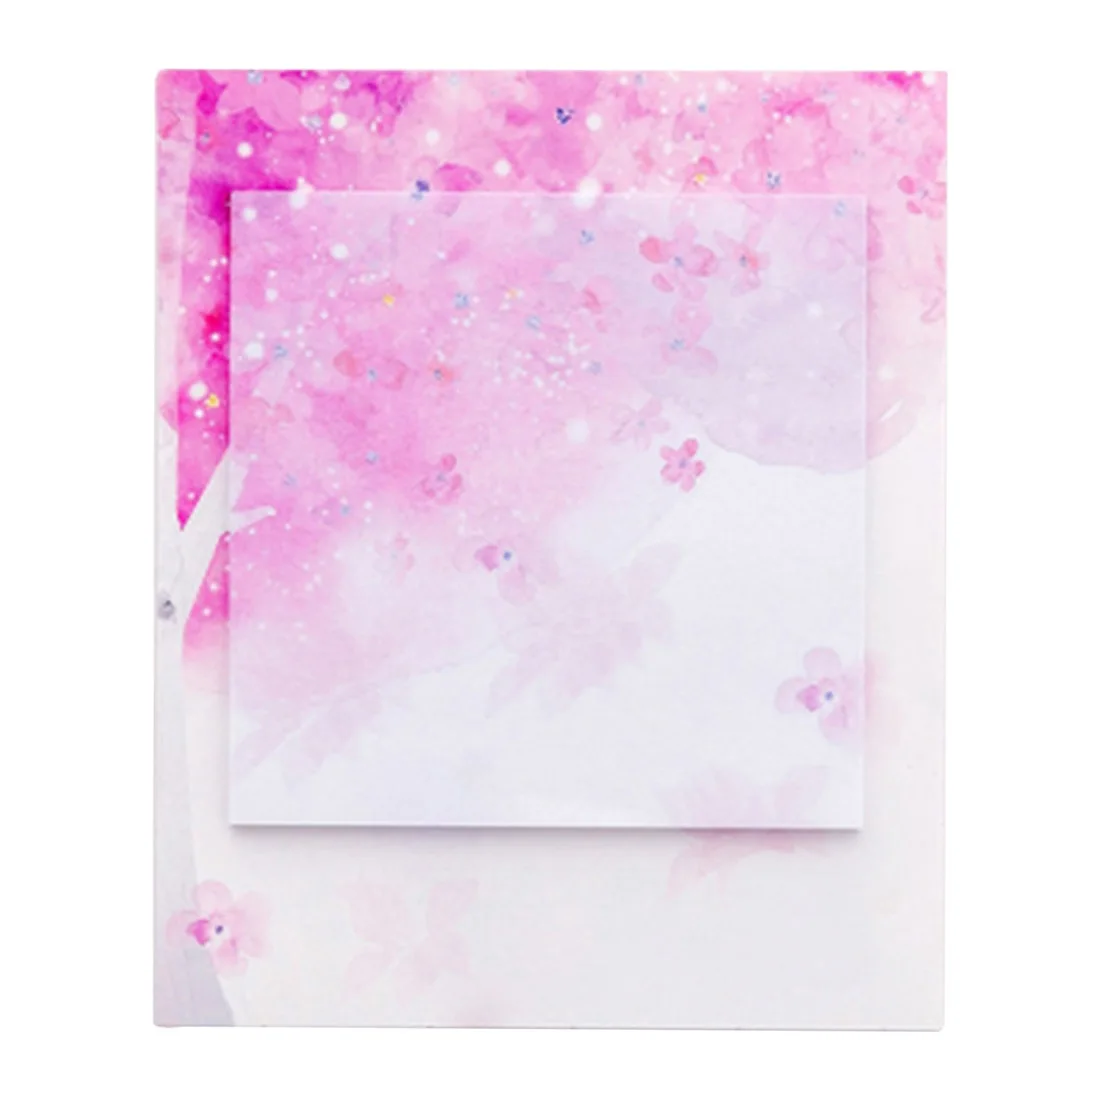 Лазерный Memopad японский сакура самоклеющиеся заметки самоклеющиеся липкие заметки милые блокноты размещенные блокноты наклейки бумага - Цвет: Pure cherry